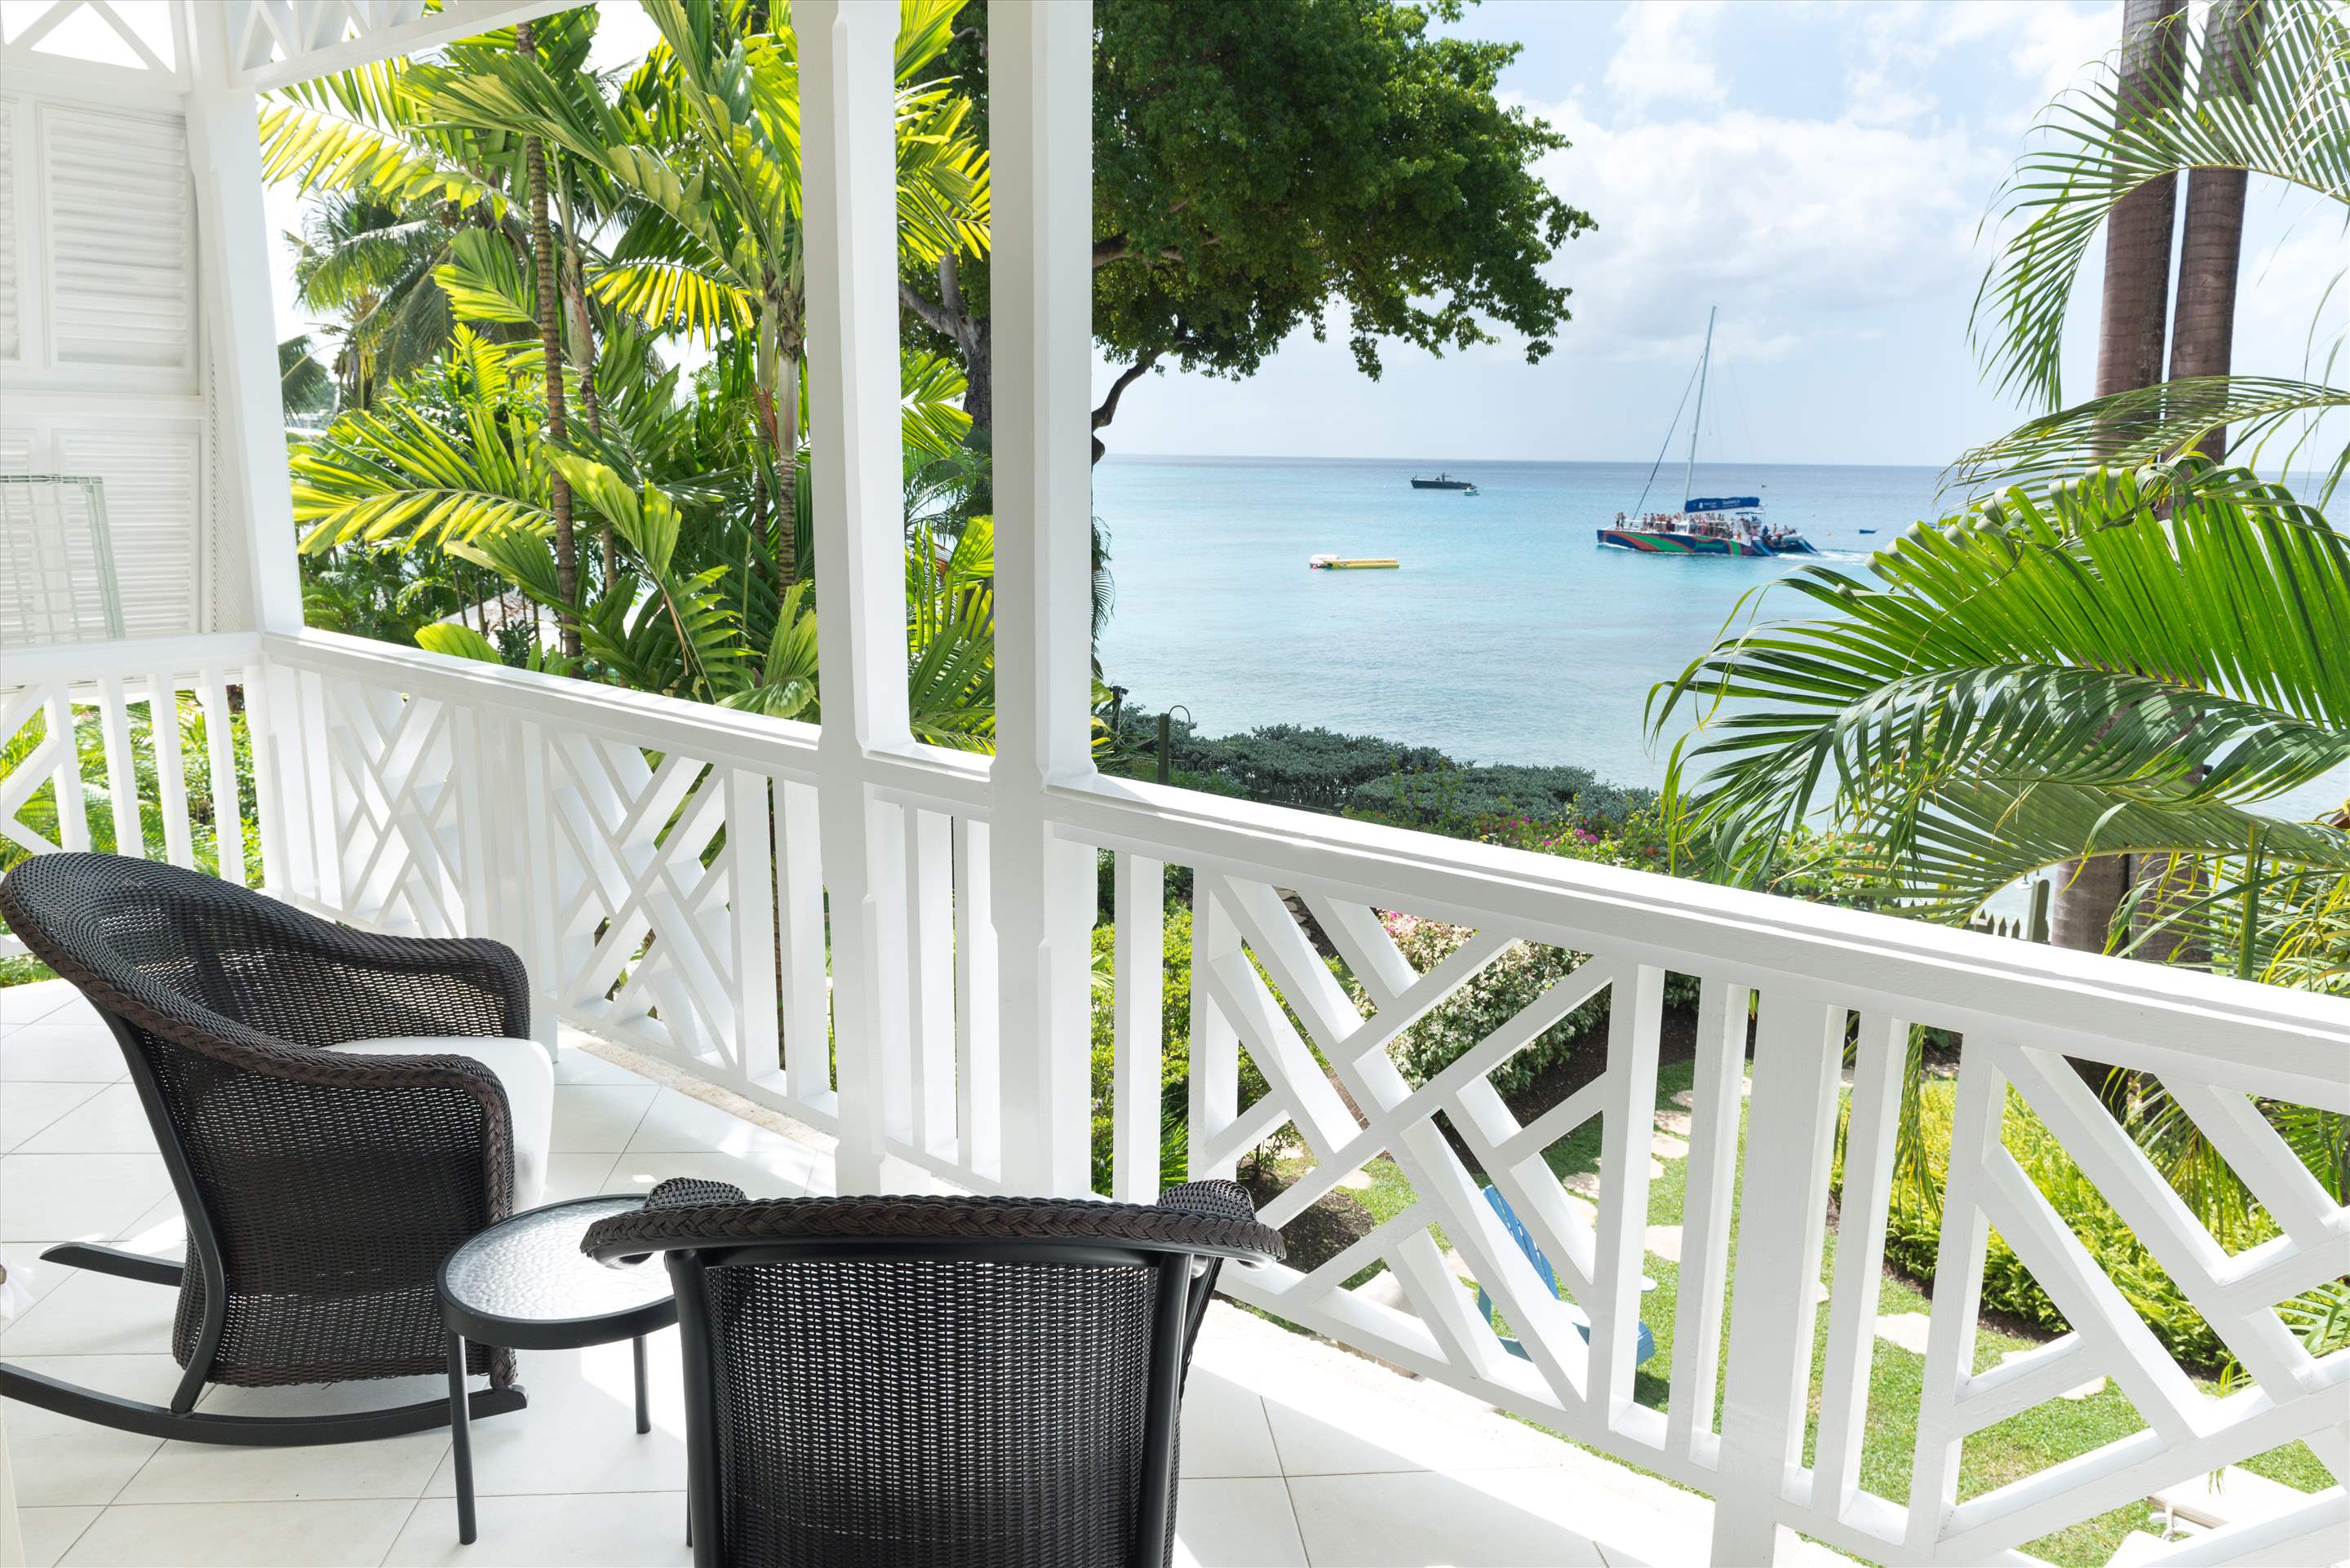 Chanel no.5, 3 bedroom villa in St. James & West Coast, Barbados Photo #2